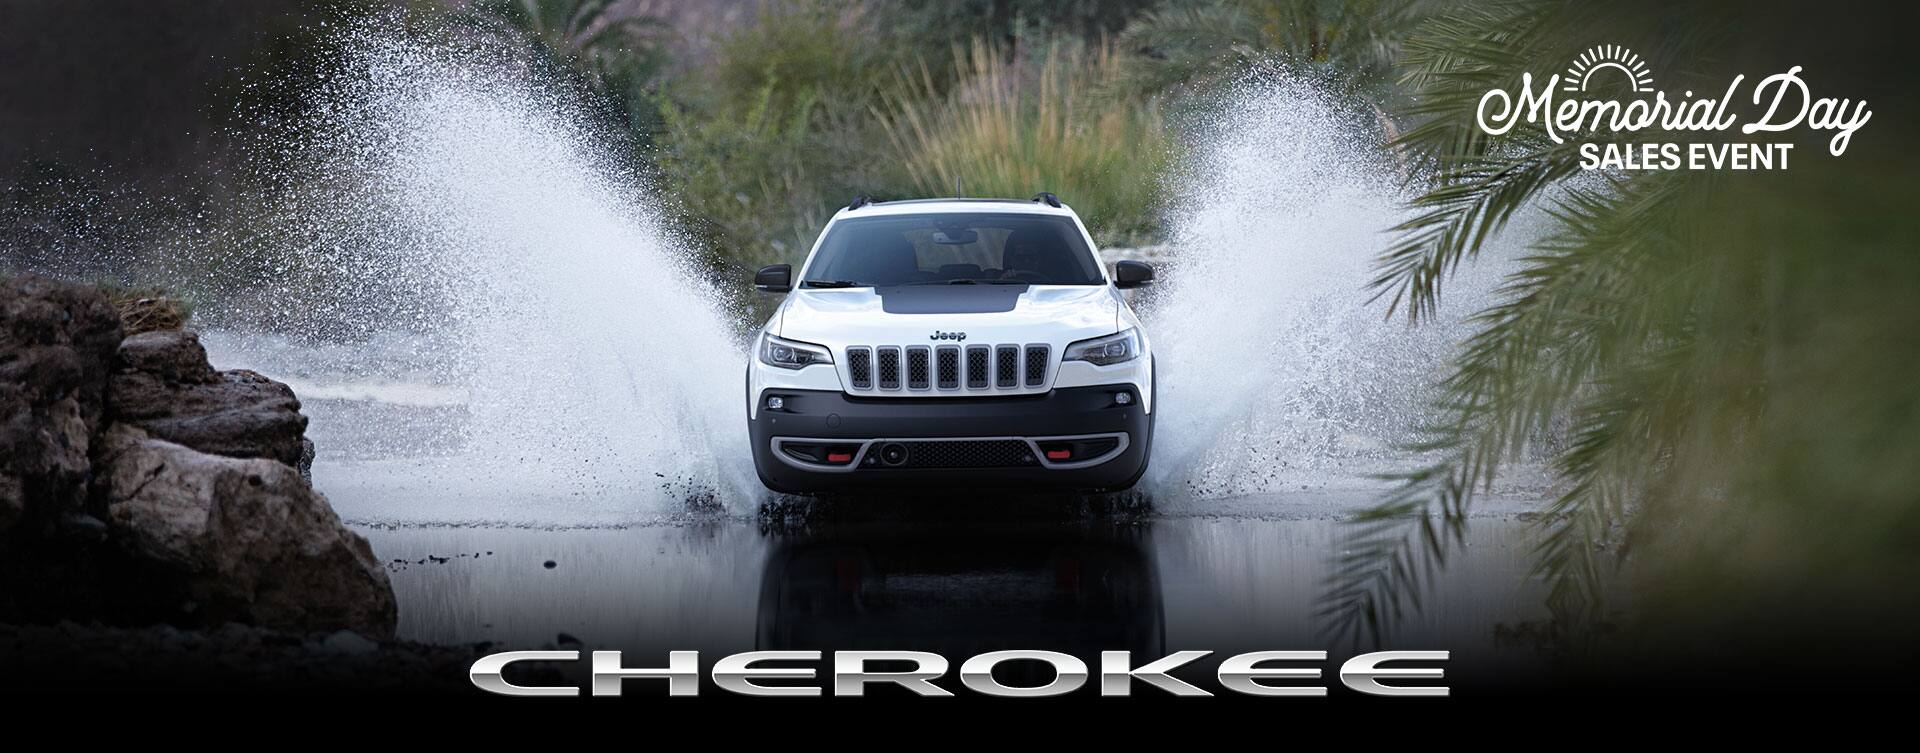 Vista en ángulo frontal de un Jeep Cherokee Trailhawk 2023 blanco vadeando un arroyo, salpicando agua muy por encima del techo del vehículo. Cherokee. Logo del evento de ventas por el Día de los Caídos.